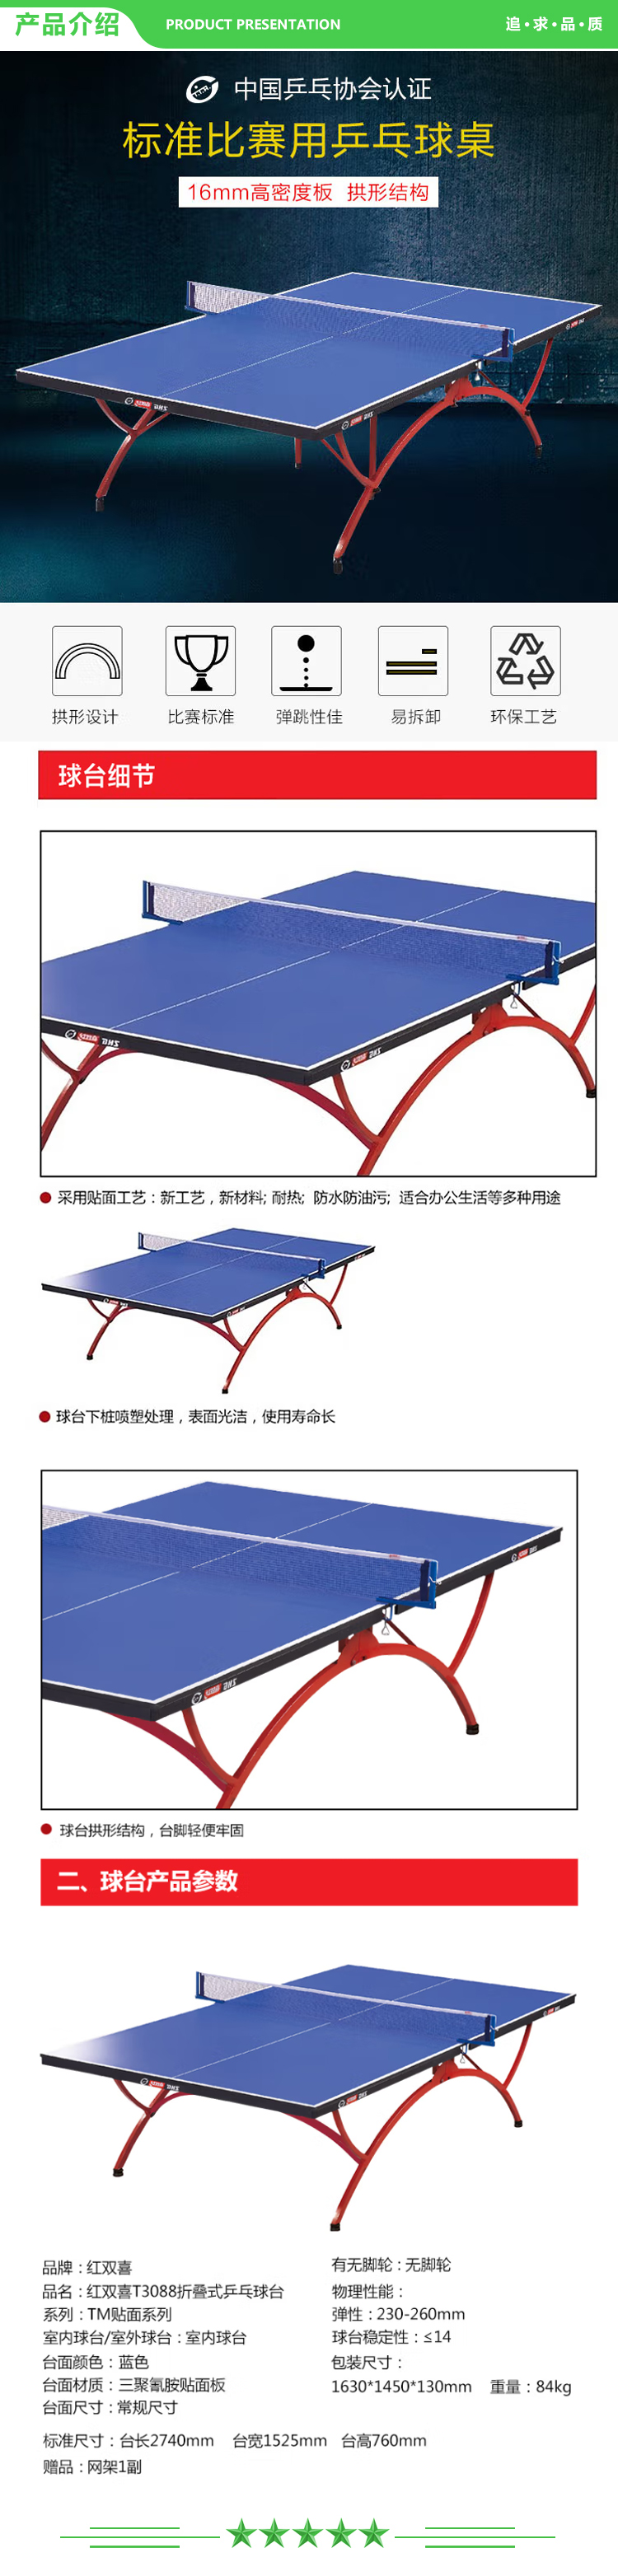 红双喜 DHS DXBN003-1(T3088) 乒乓球桌室内乒乓球台训练比赛用乒乓球案子附网架  (2).jpg